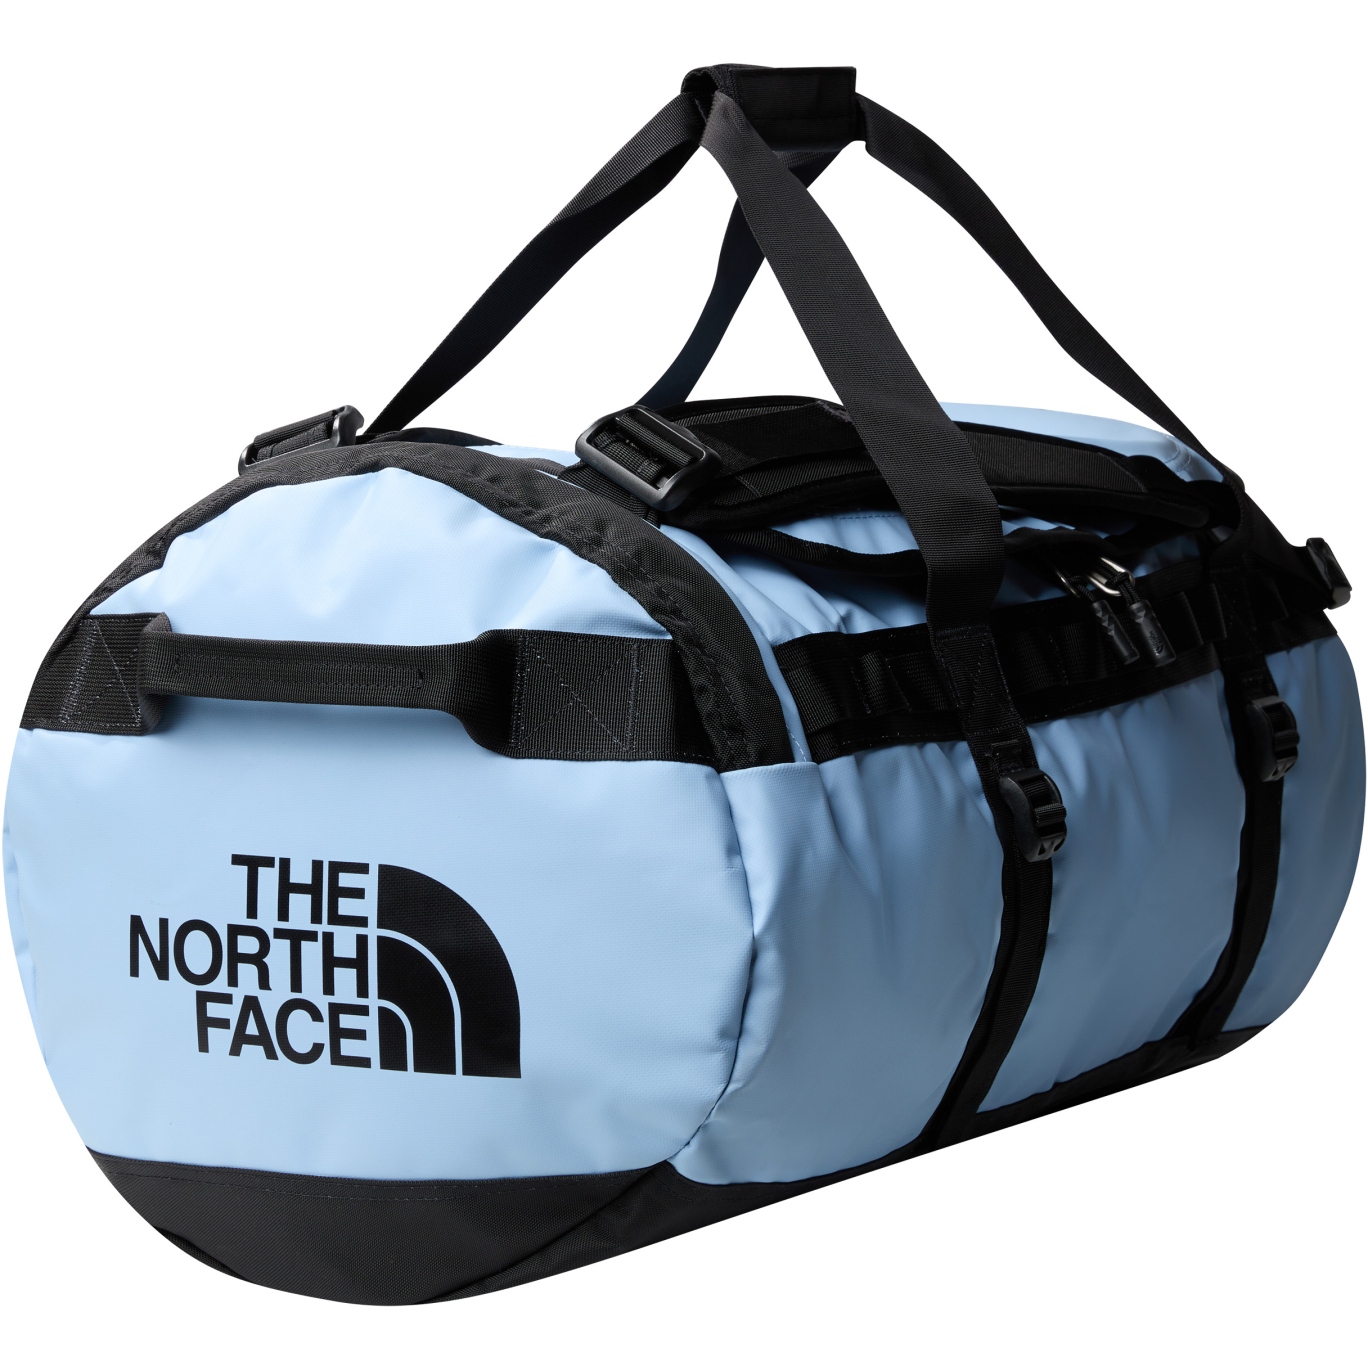 Produktbild von The North Face Base Camp Duffel Reisetasche - Medium - Steel Blue/TNF Black